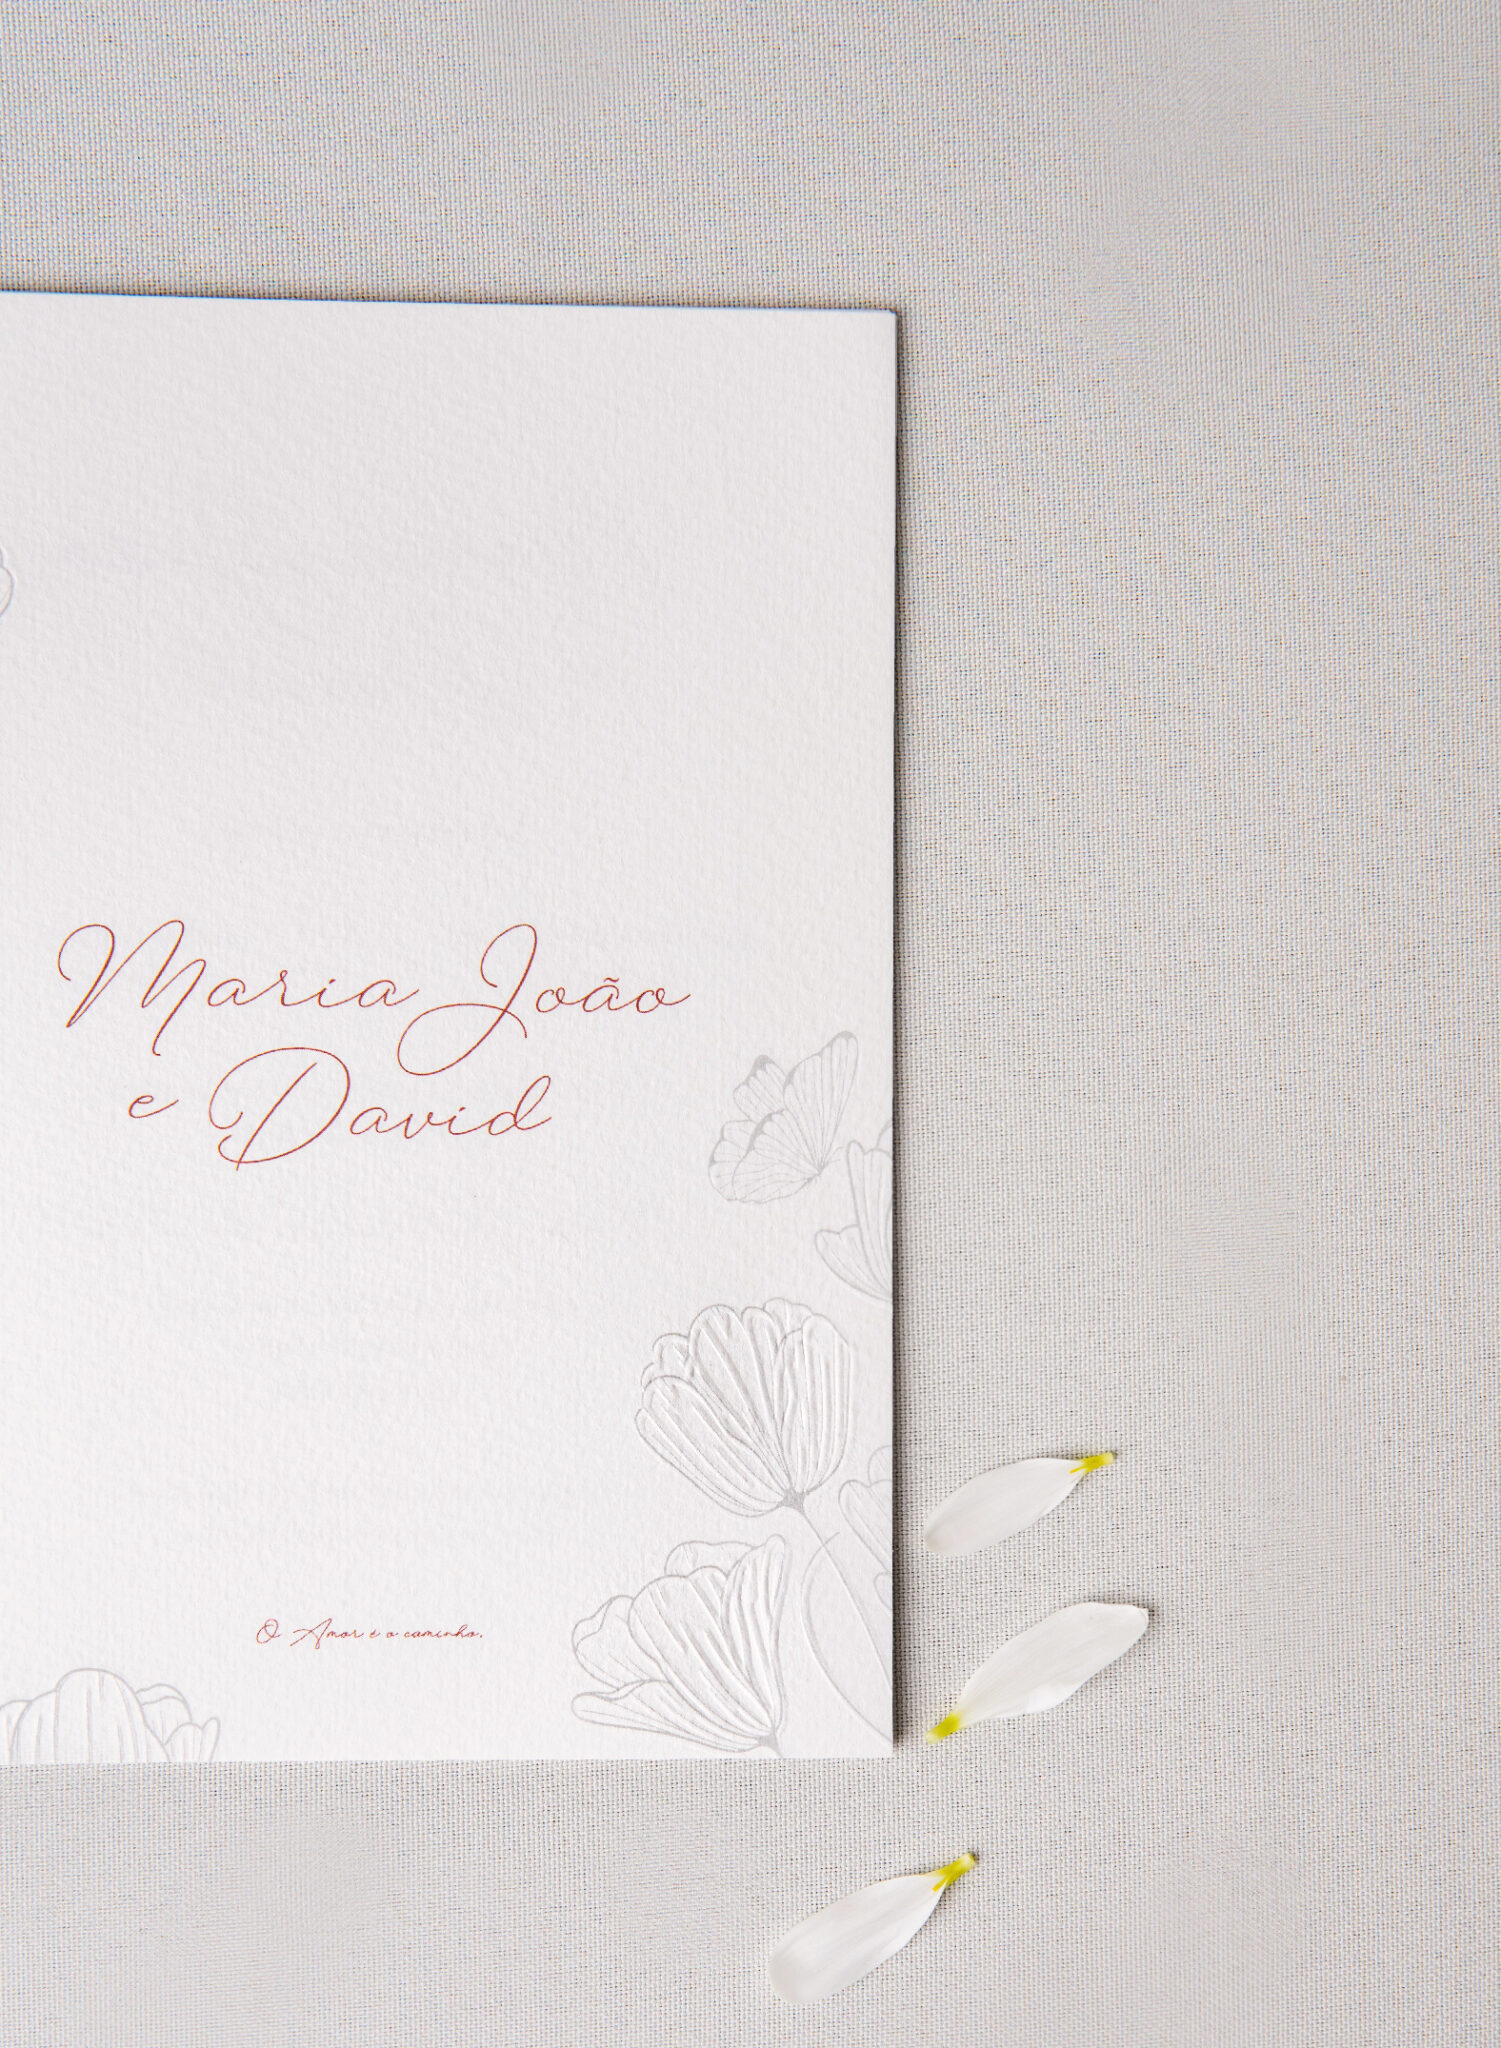 Convite de casamento com detalhes florais em papel